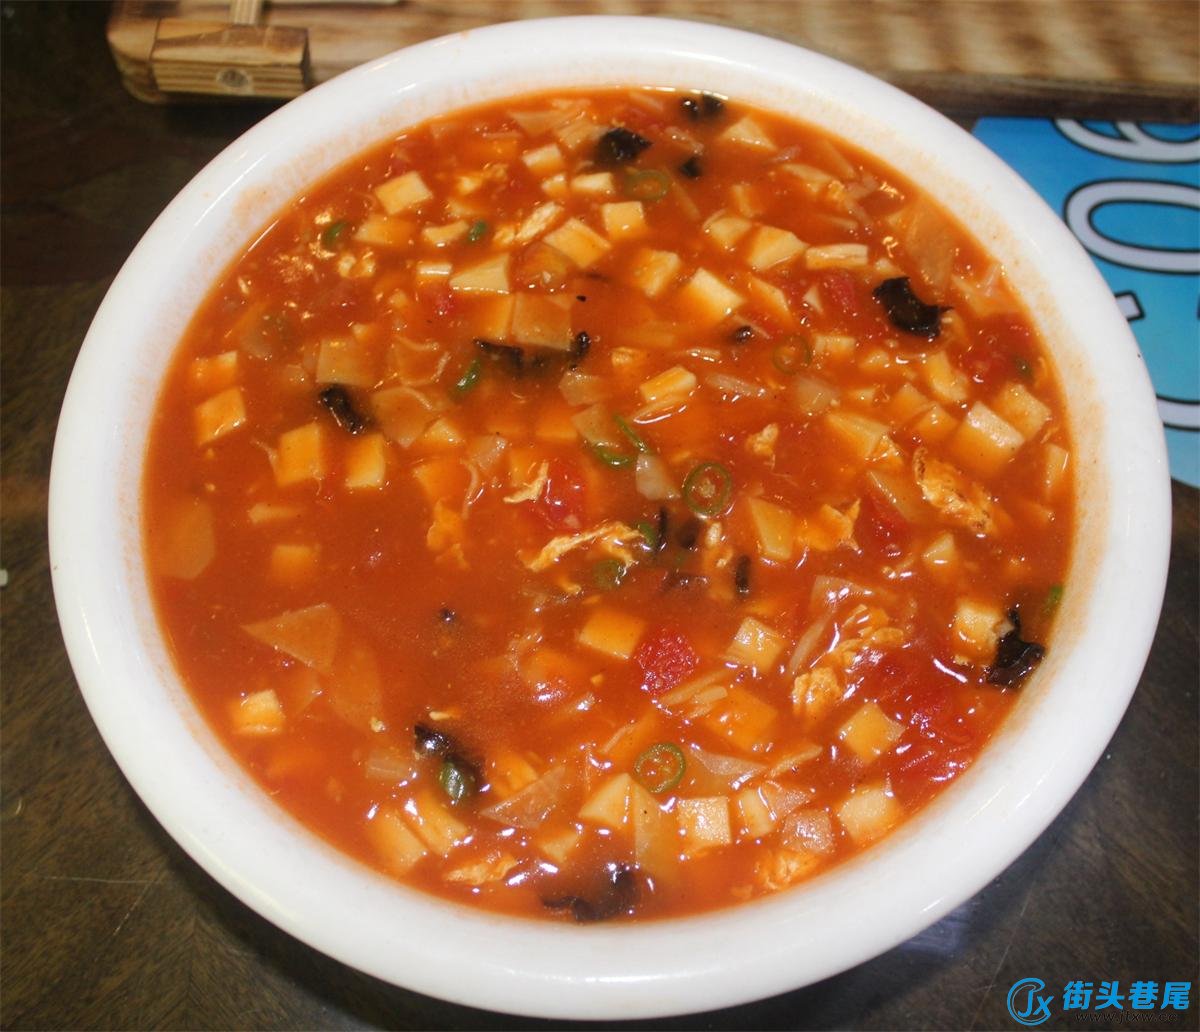 其实,西红柿泡馍也是陕西的地道美食之一,而蒲城食府对传统西红柿泡馍